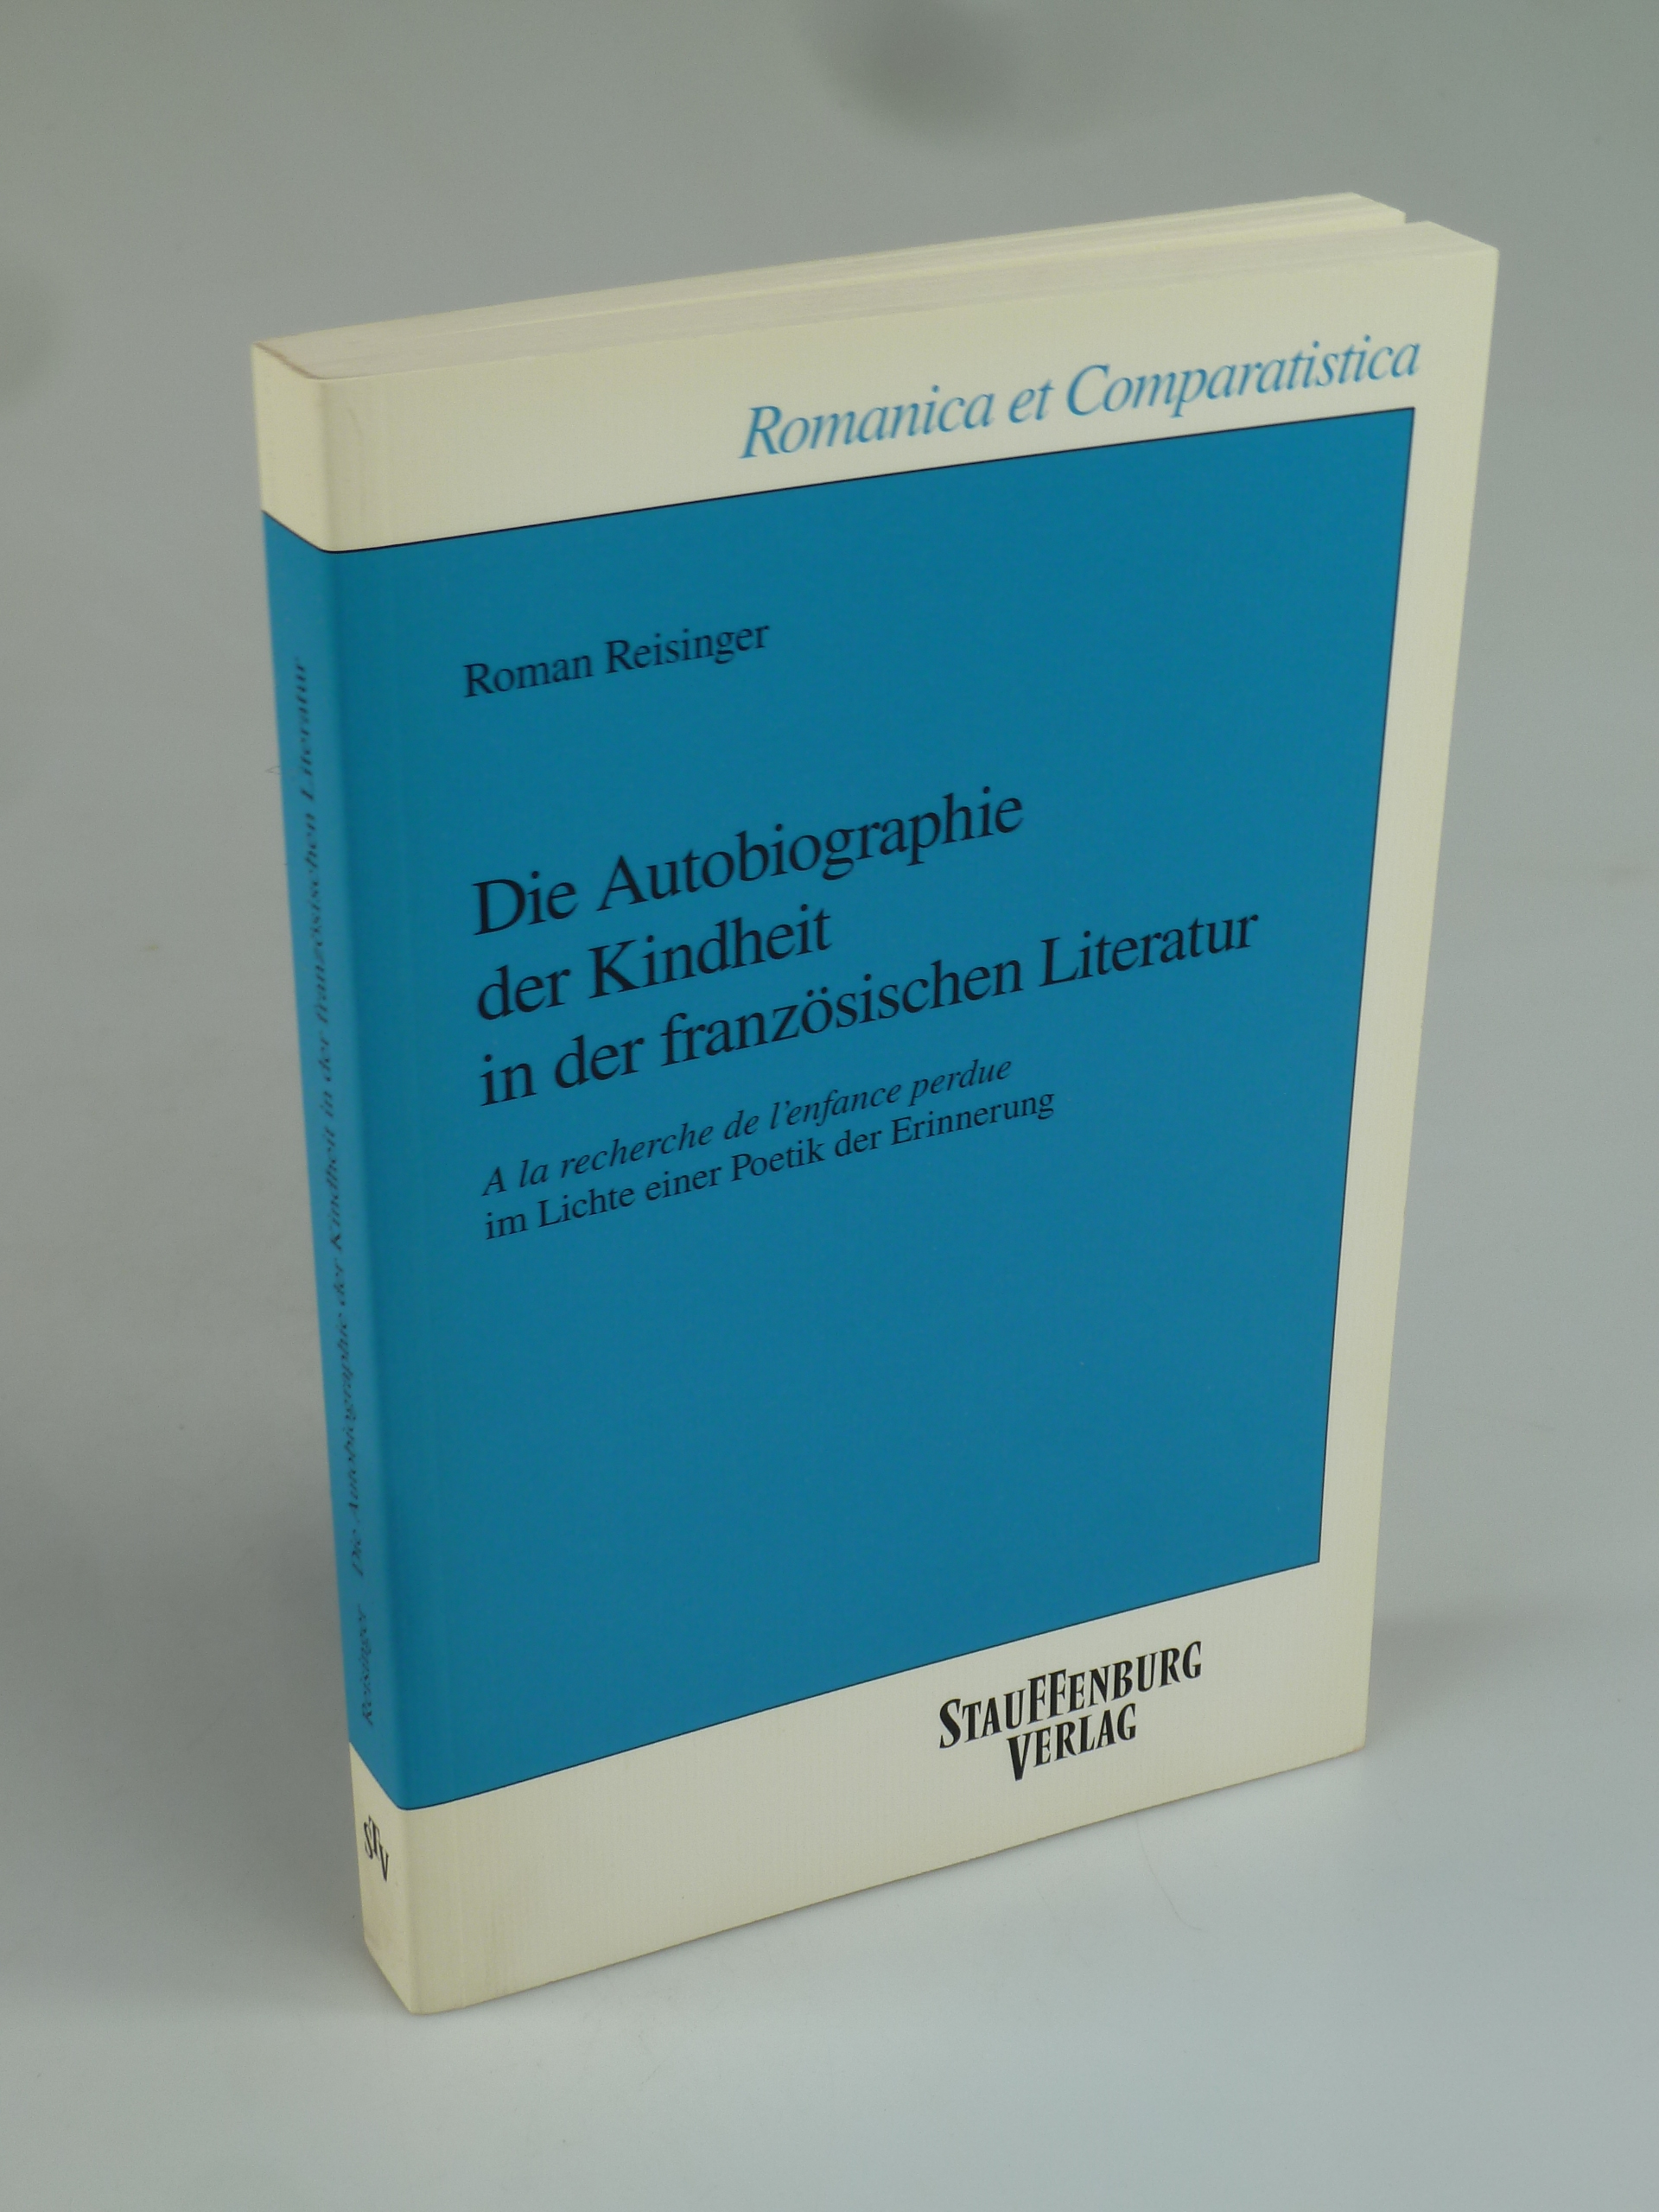 Die Autobiographie der Kindheit in der französischen Literatur. - REISINGER, Roman.